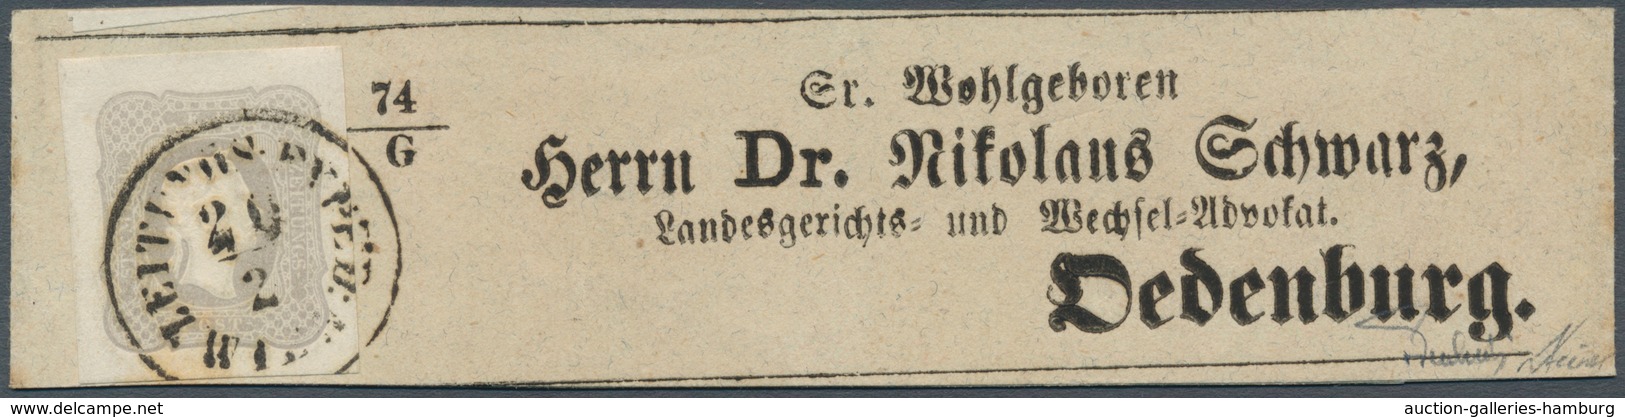 Österreich: 1861, (1,05 Kreuzer) Hellgrauviolett Zeitungsmarke, Allseits Breit- Bis überrandig, Entw - Nuevos